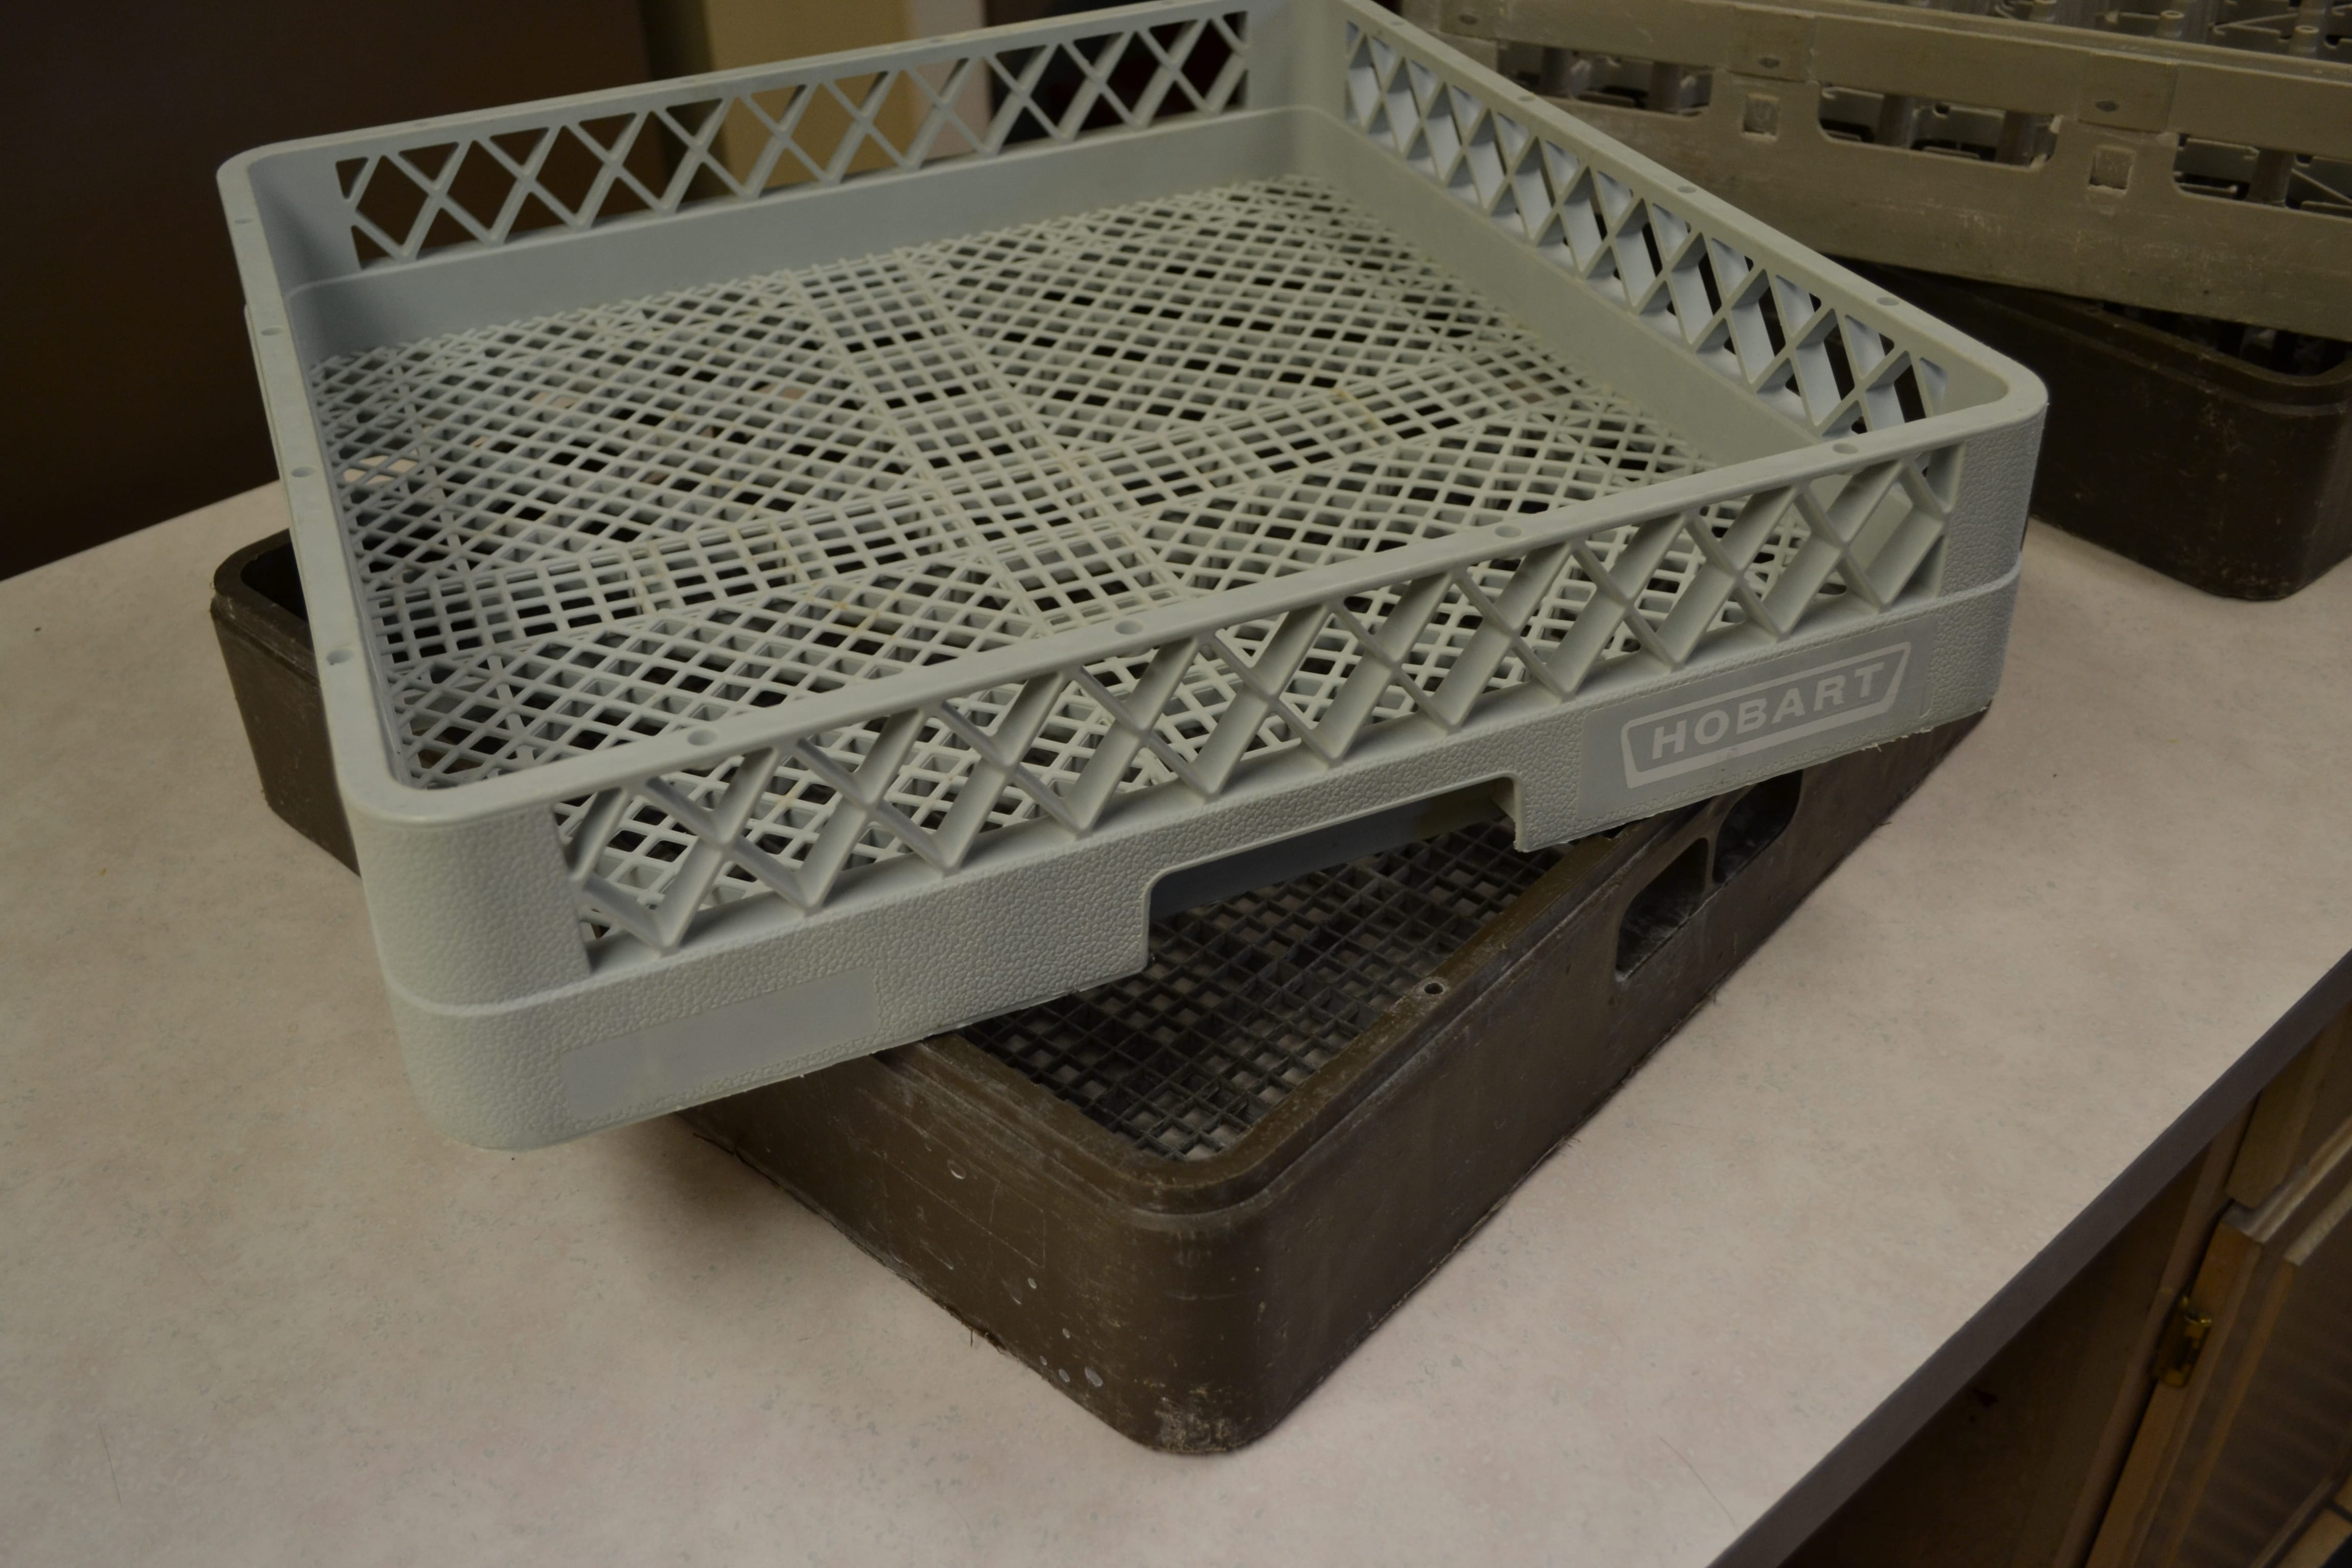 hobart dishwasher trays